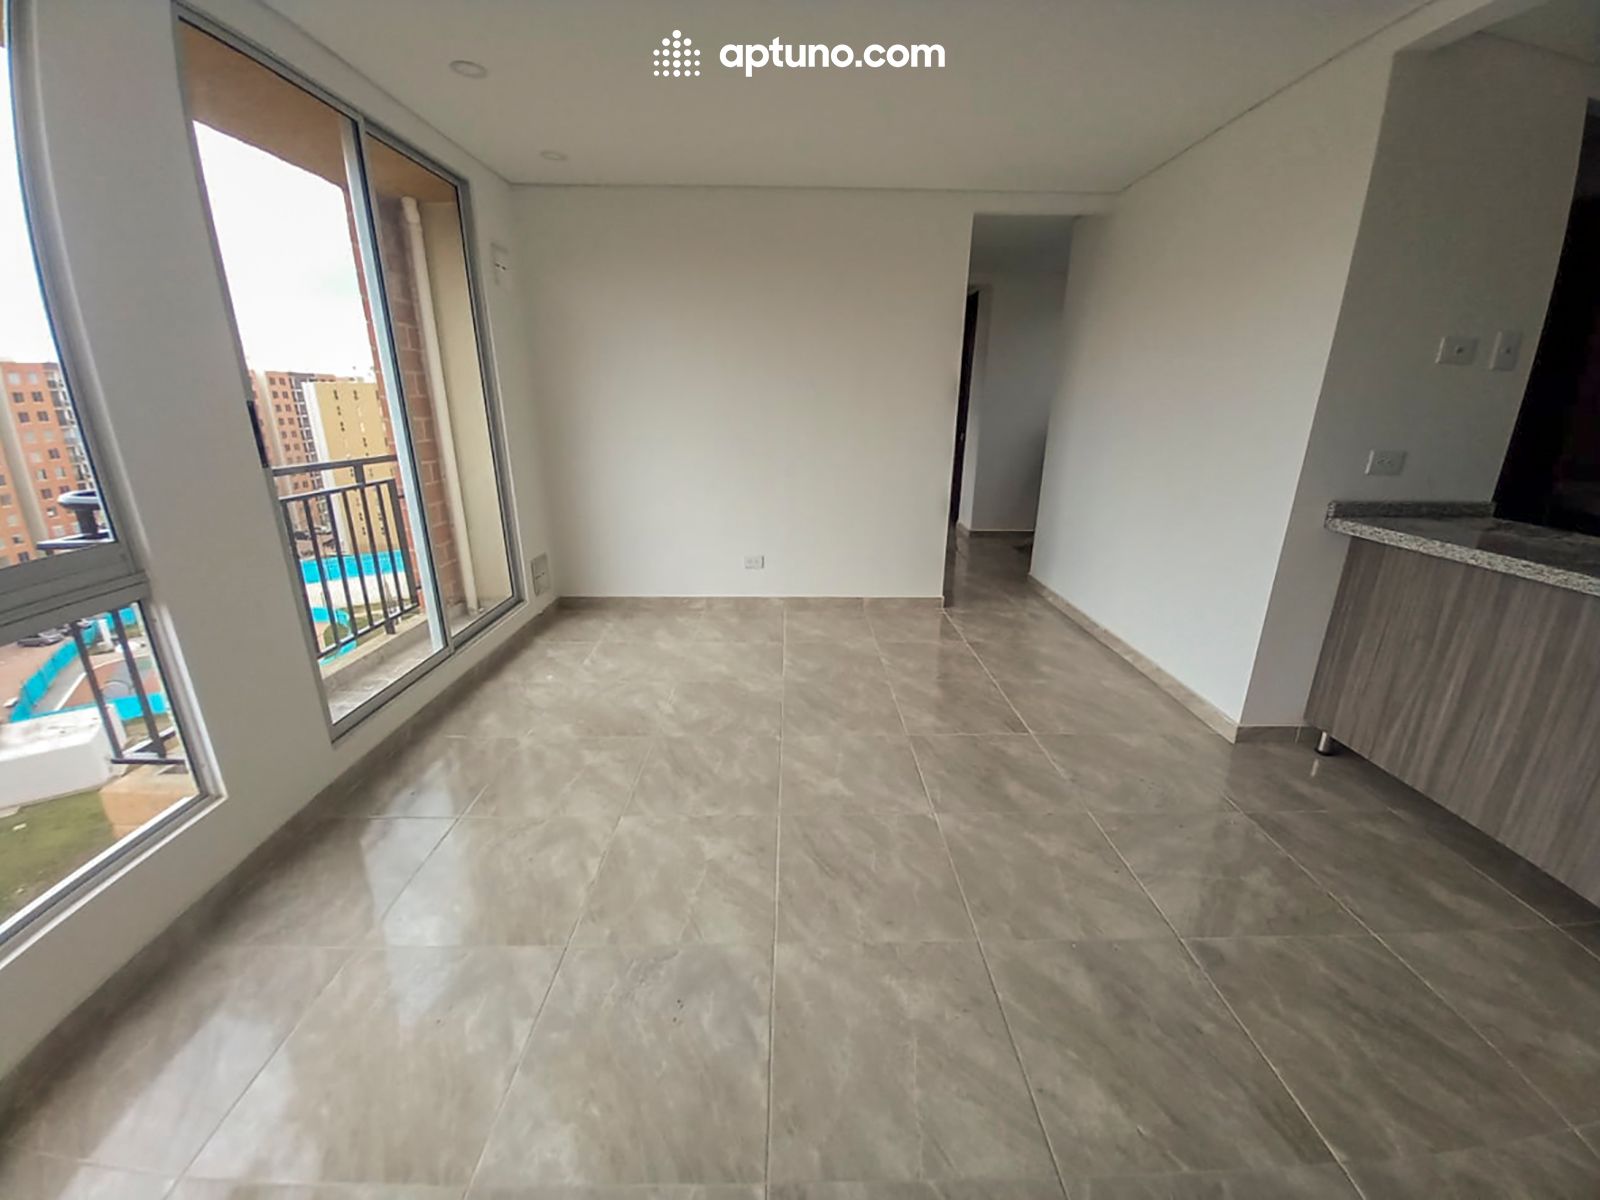 Apartamento en arriendo Madrid 64 m² - $ 1.200.000,00